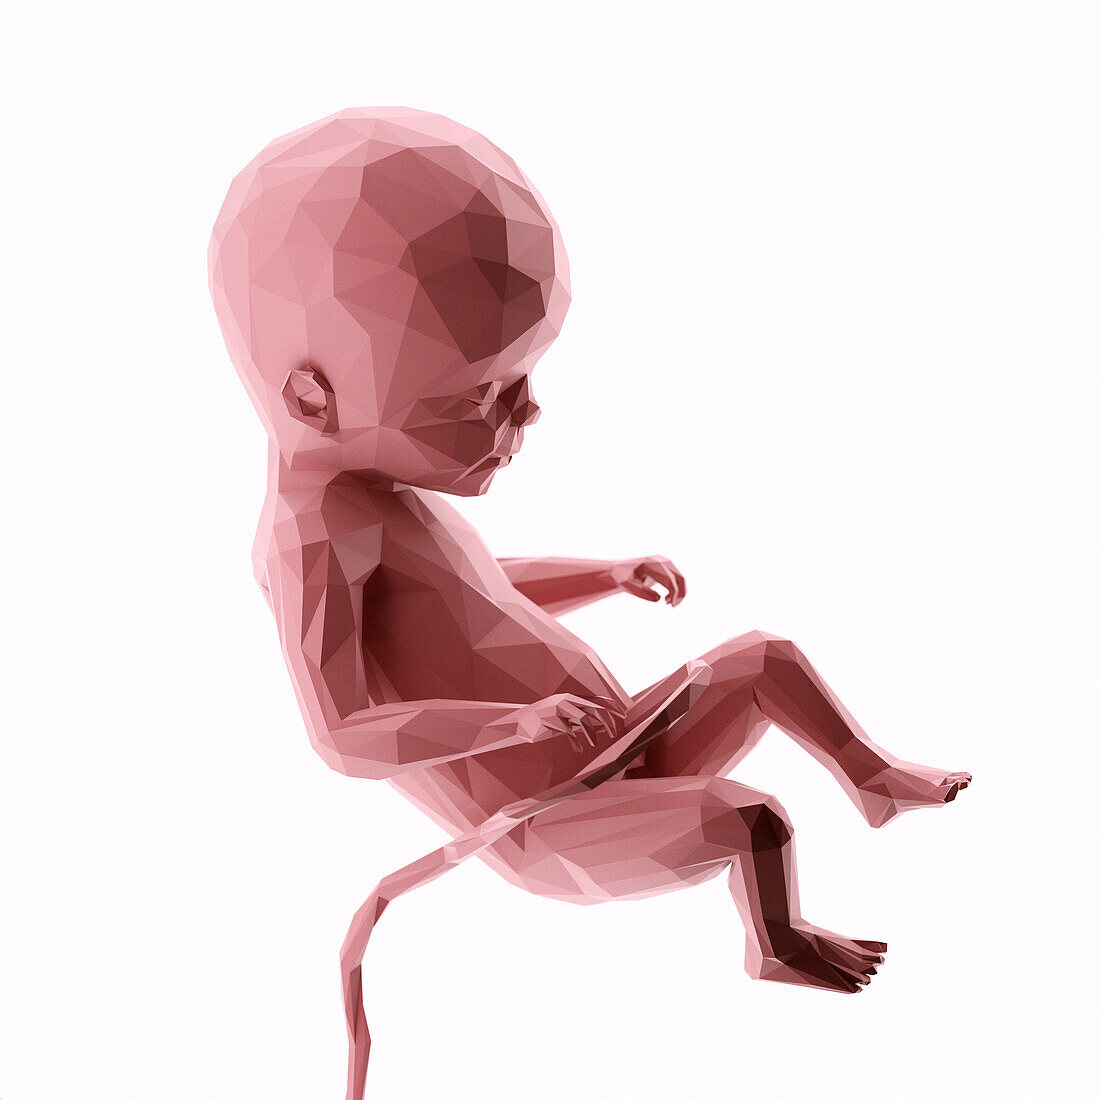 Human fetus at week 22, abstract illustration